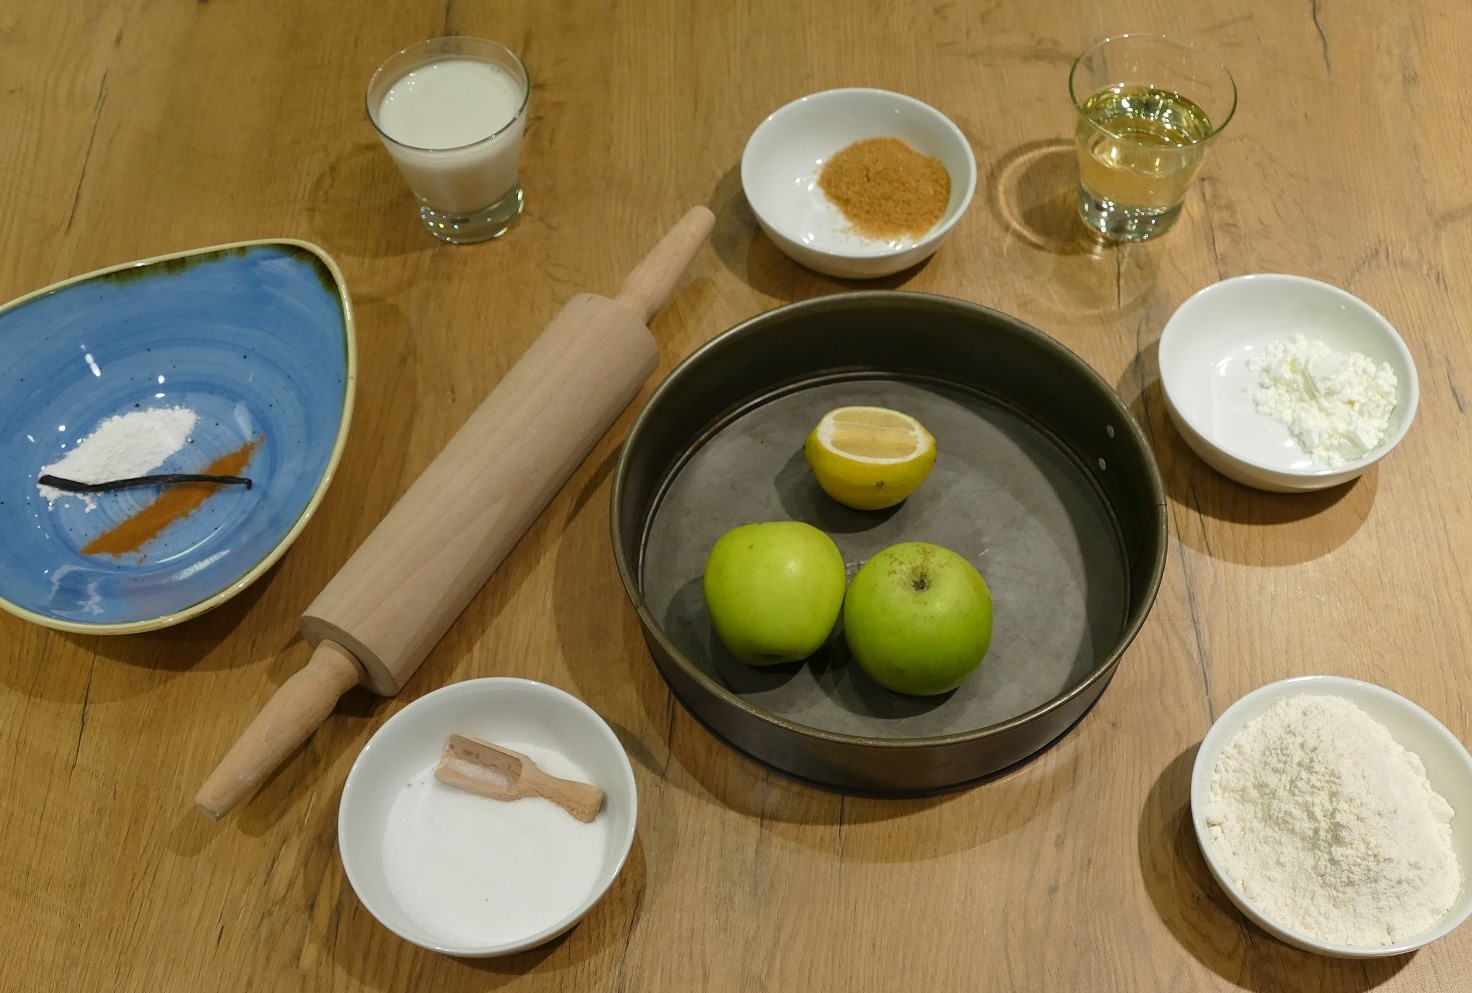 Zutaten wie Äpfel, Vanille, Zucker und Mehl stehen in kleinen Schüsseln angerichtet auf einem Holztisch.